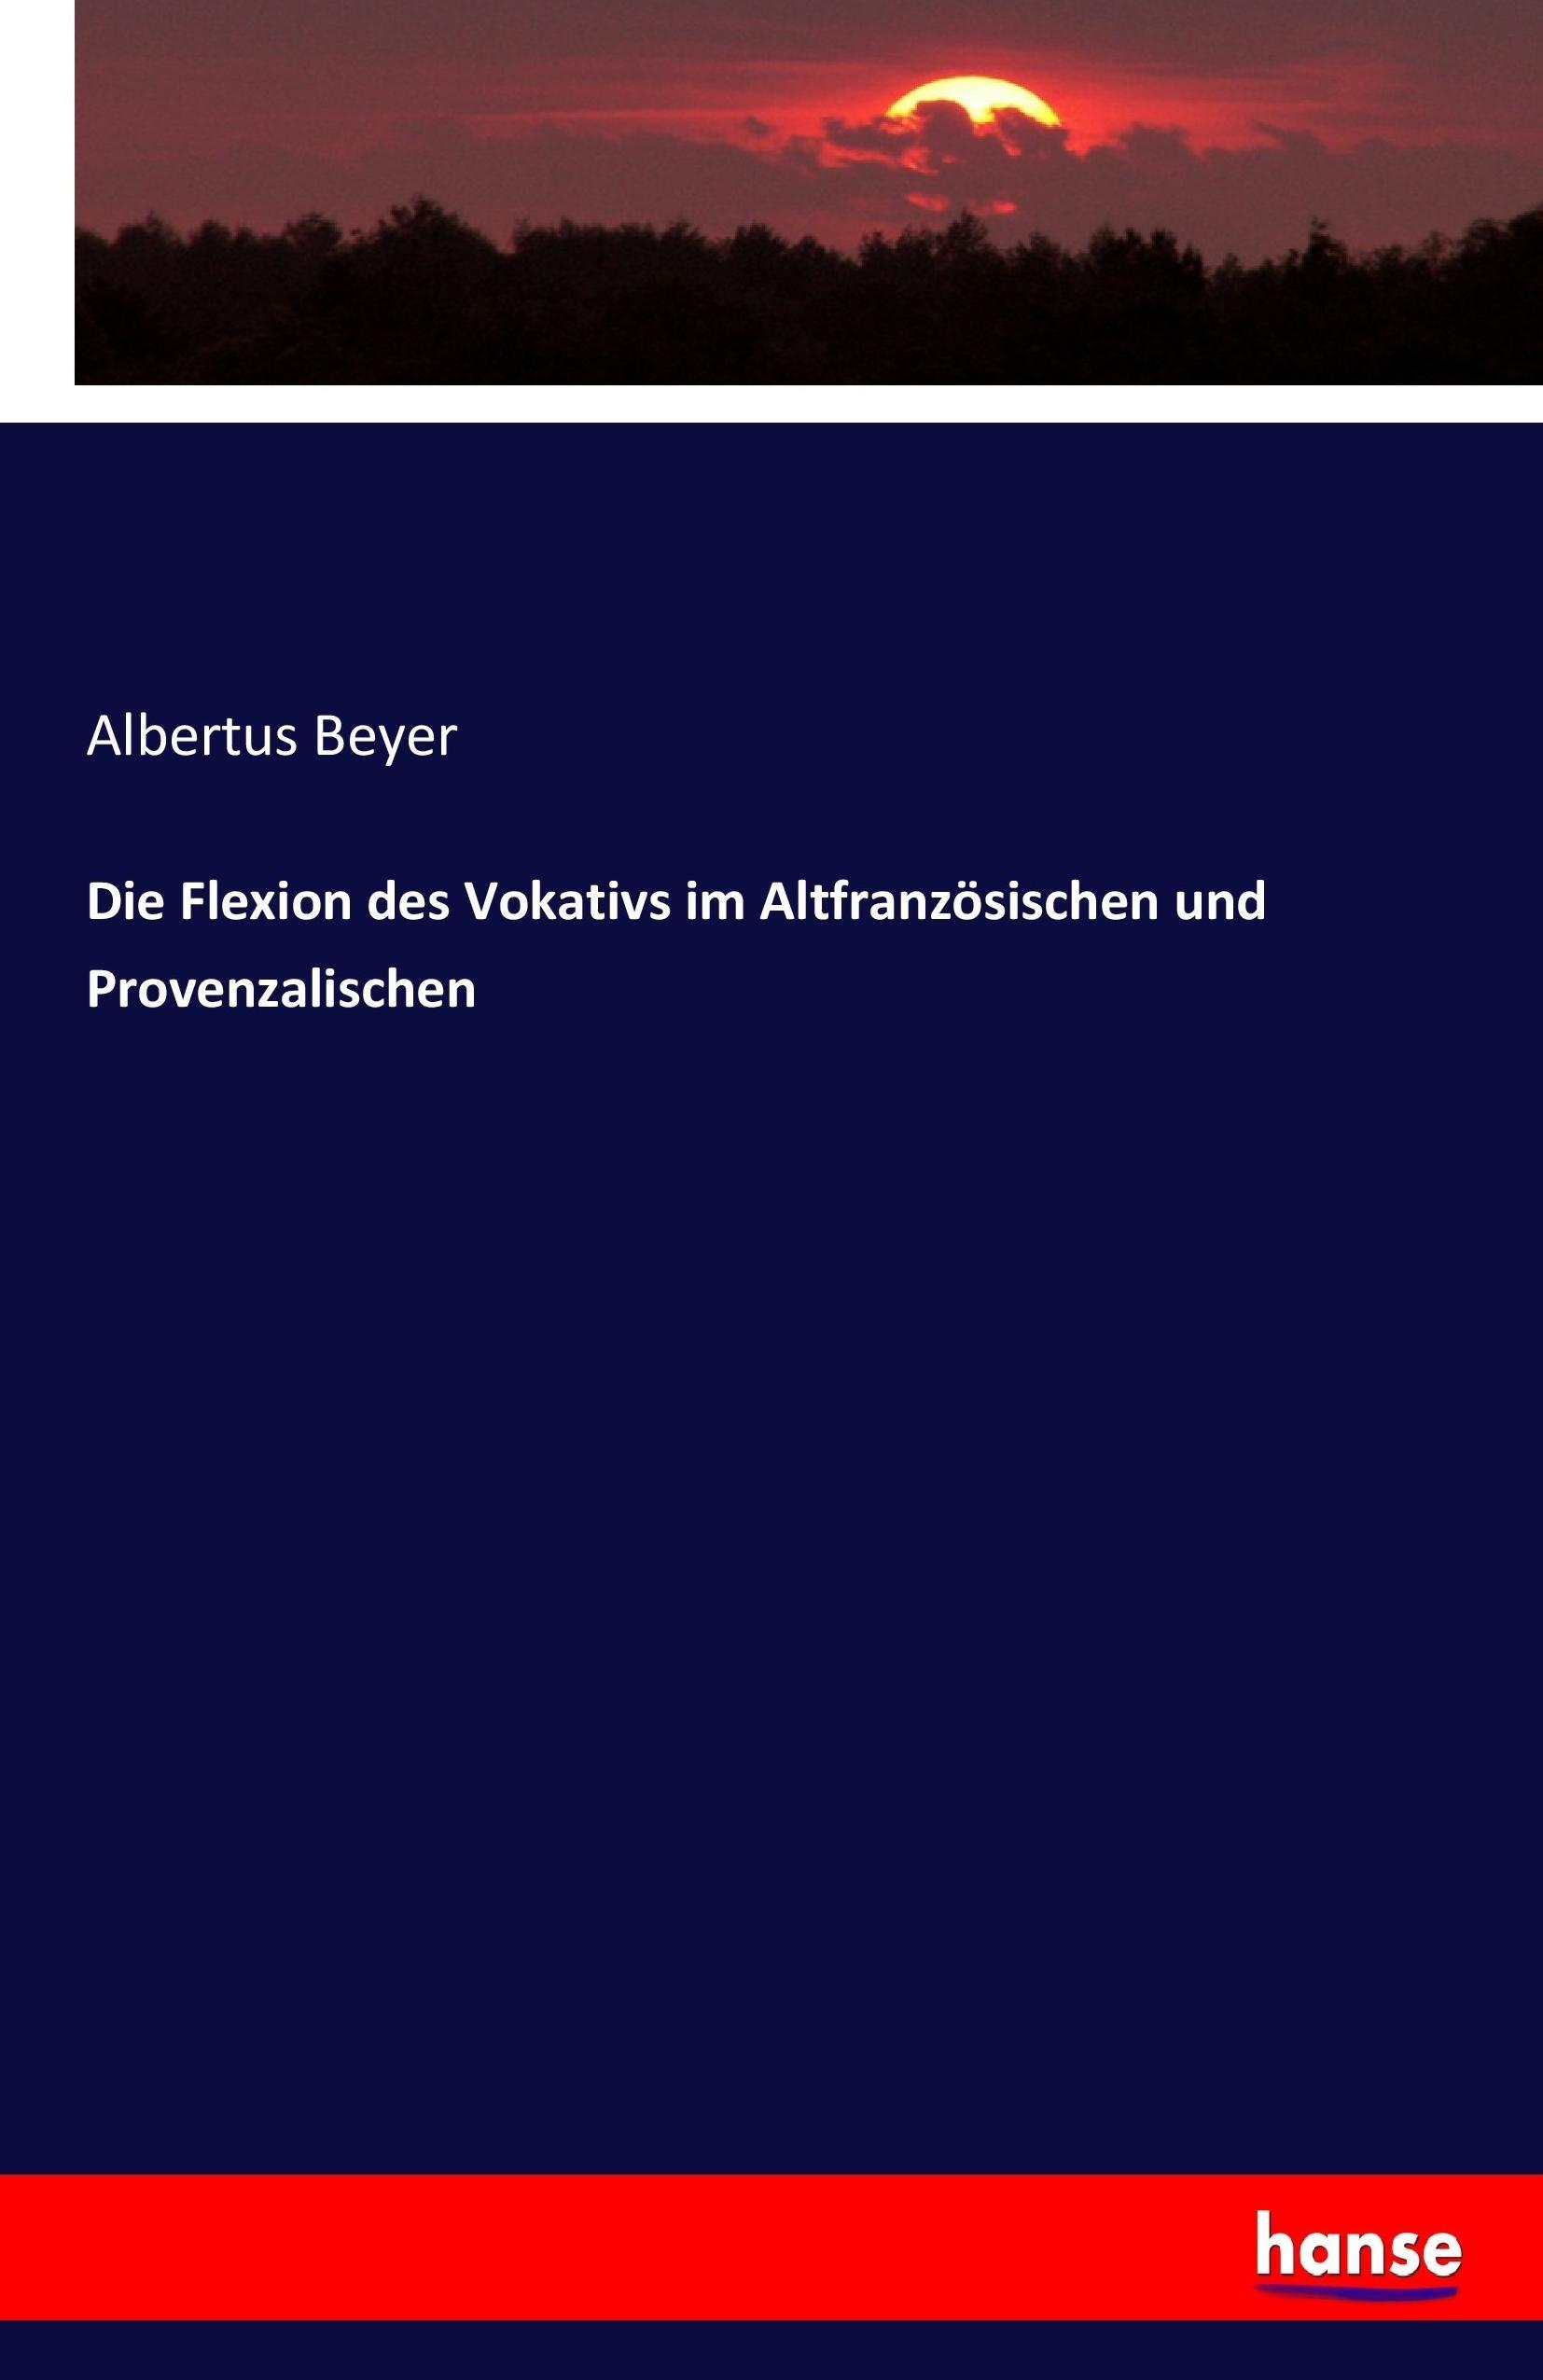 Die Flexion des Vokativs im Altfranzoesischen und Provenzalischen - Beyer, Albertus